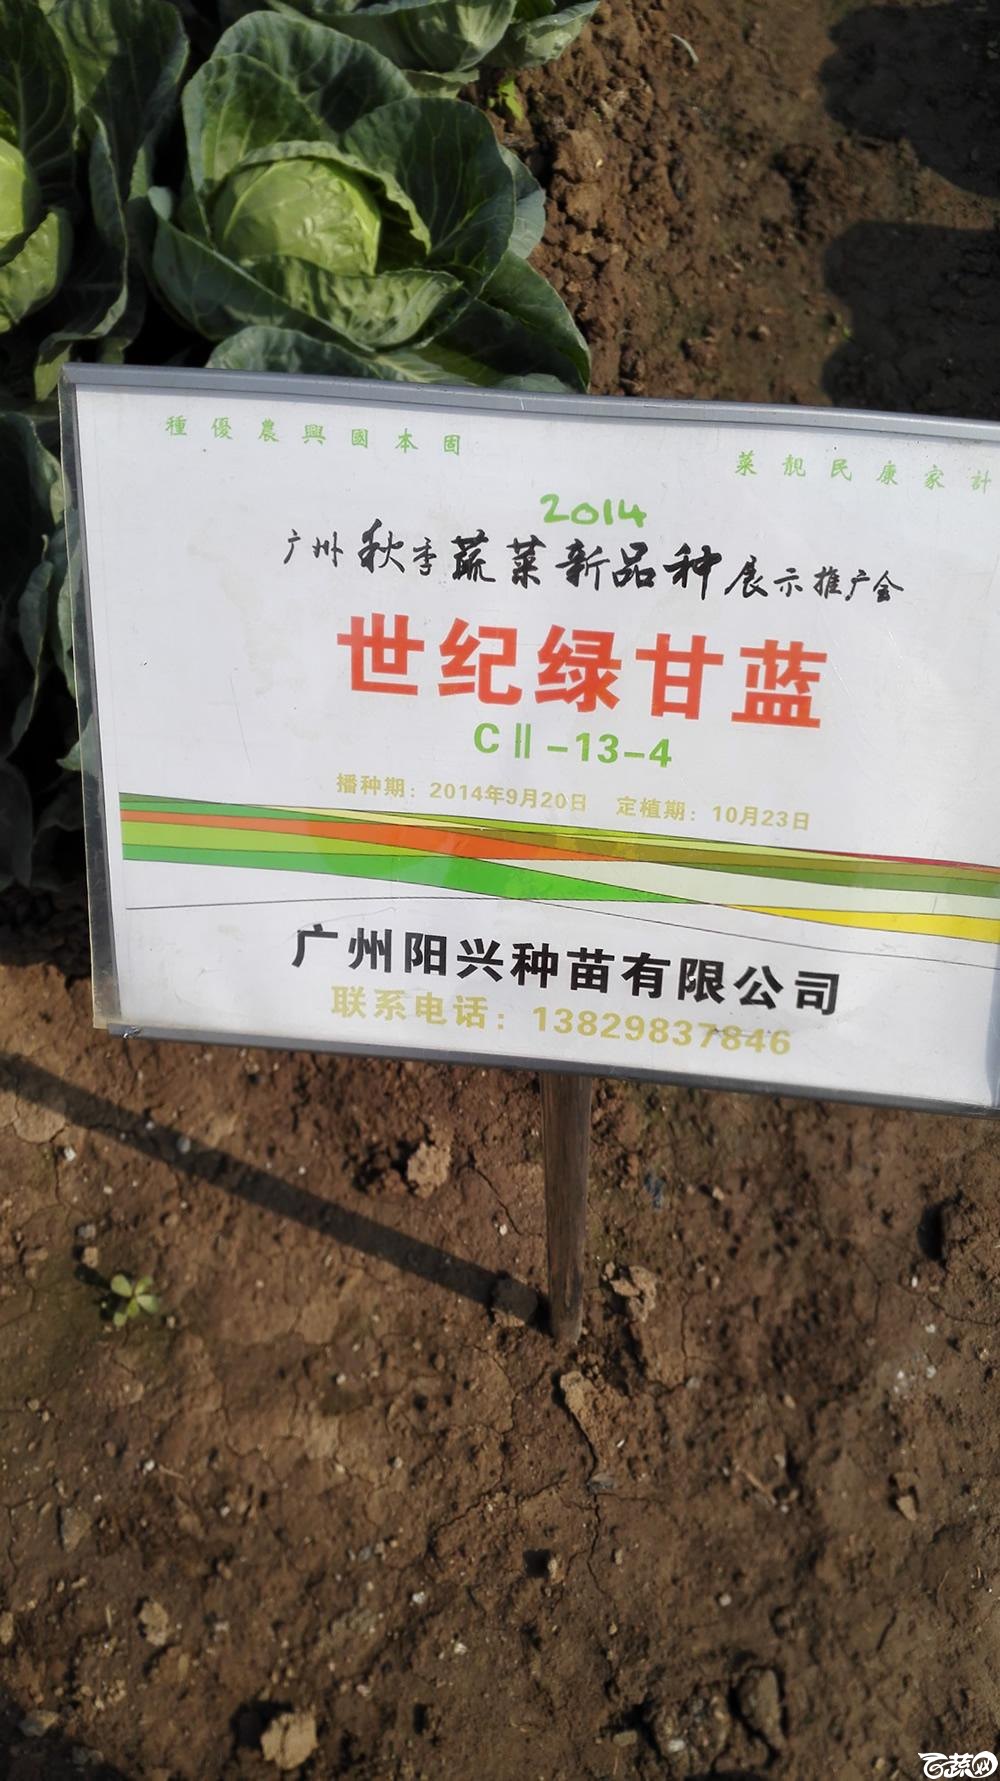 2014年12月10号广州市农科院南沙秋季蔬菜新品种展示会 甘蓝_141.jpg